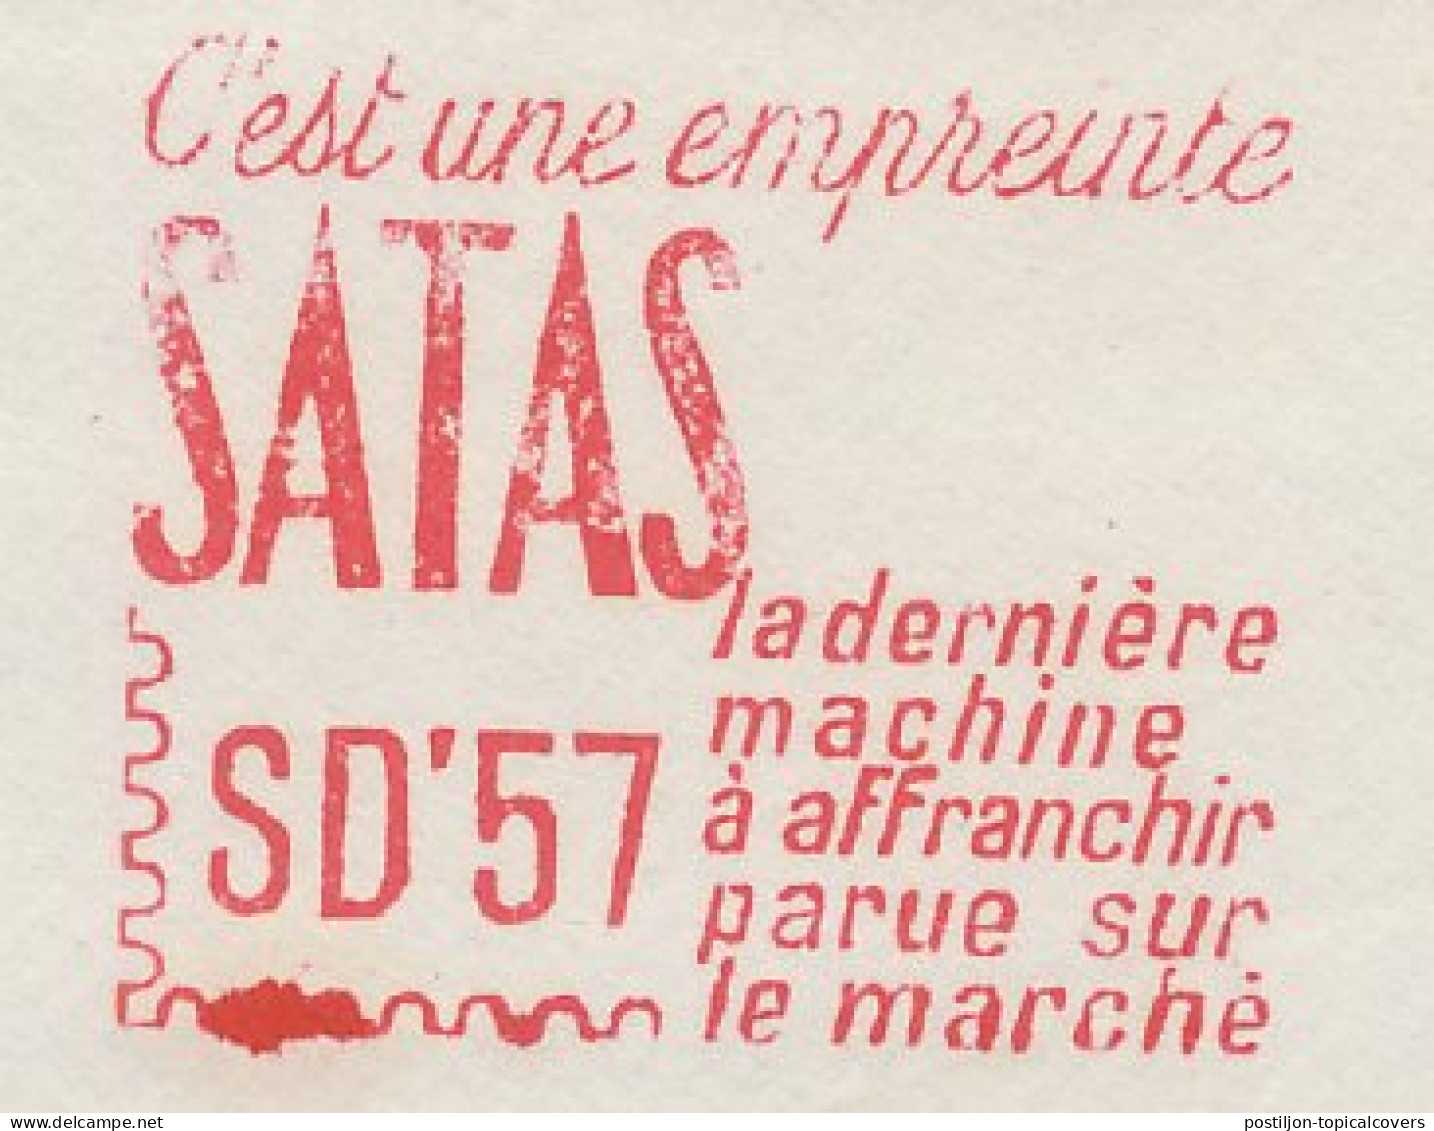 Meter Cover France 1957 SATAS - Timbres De Distributeurs [ATM]